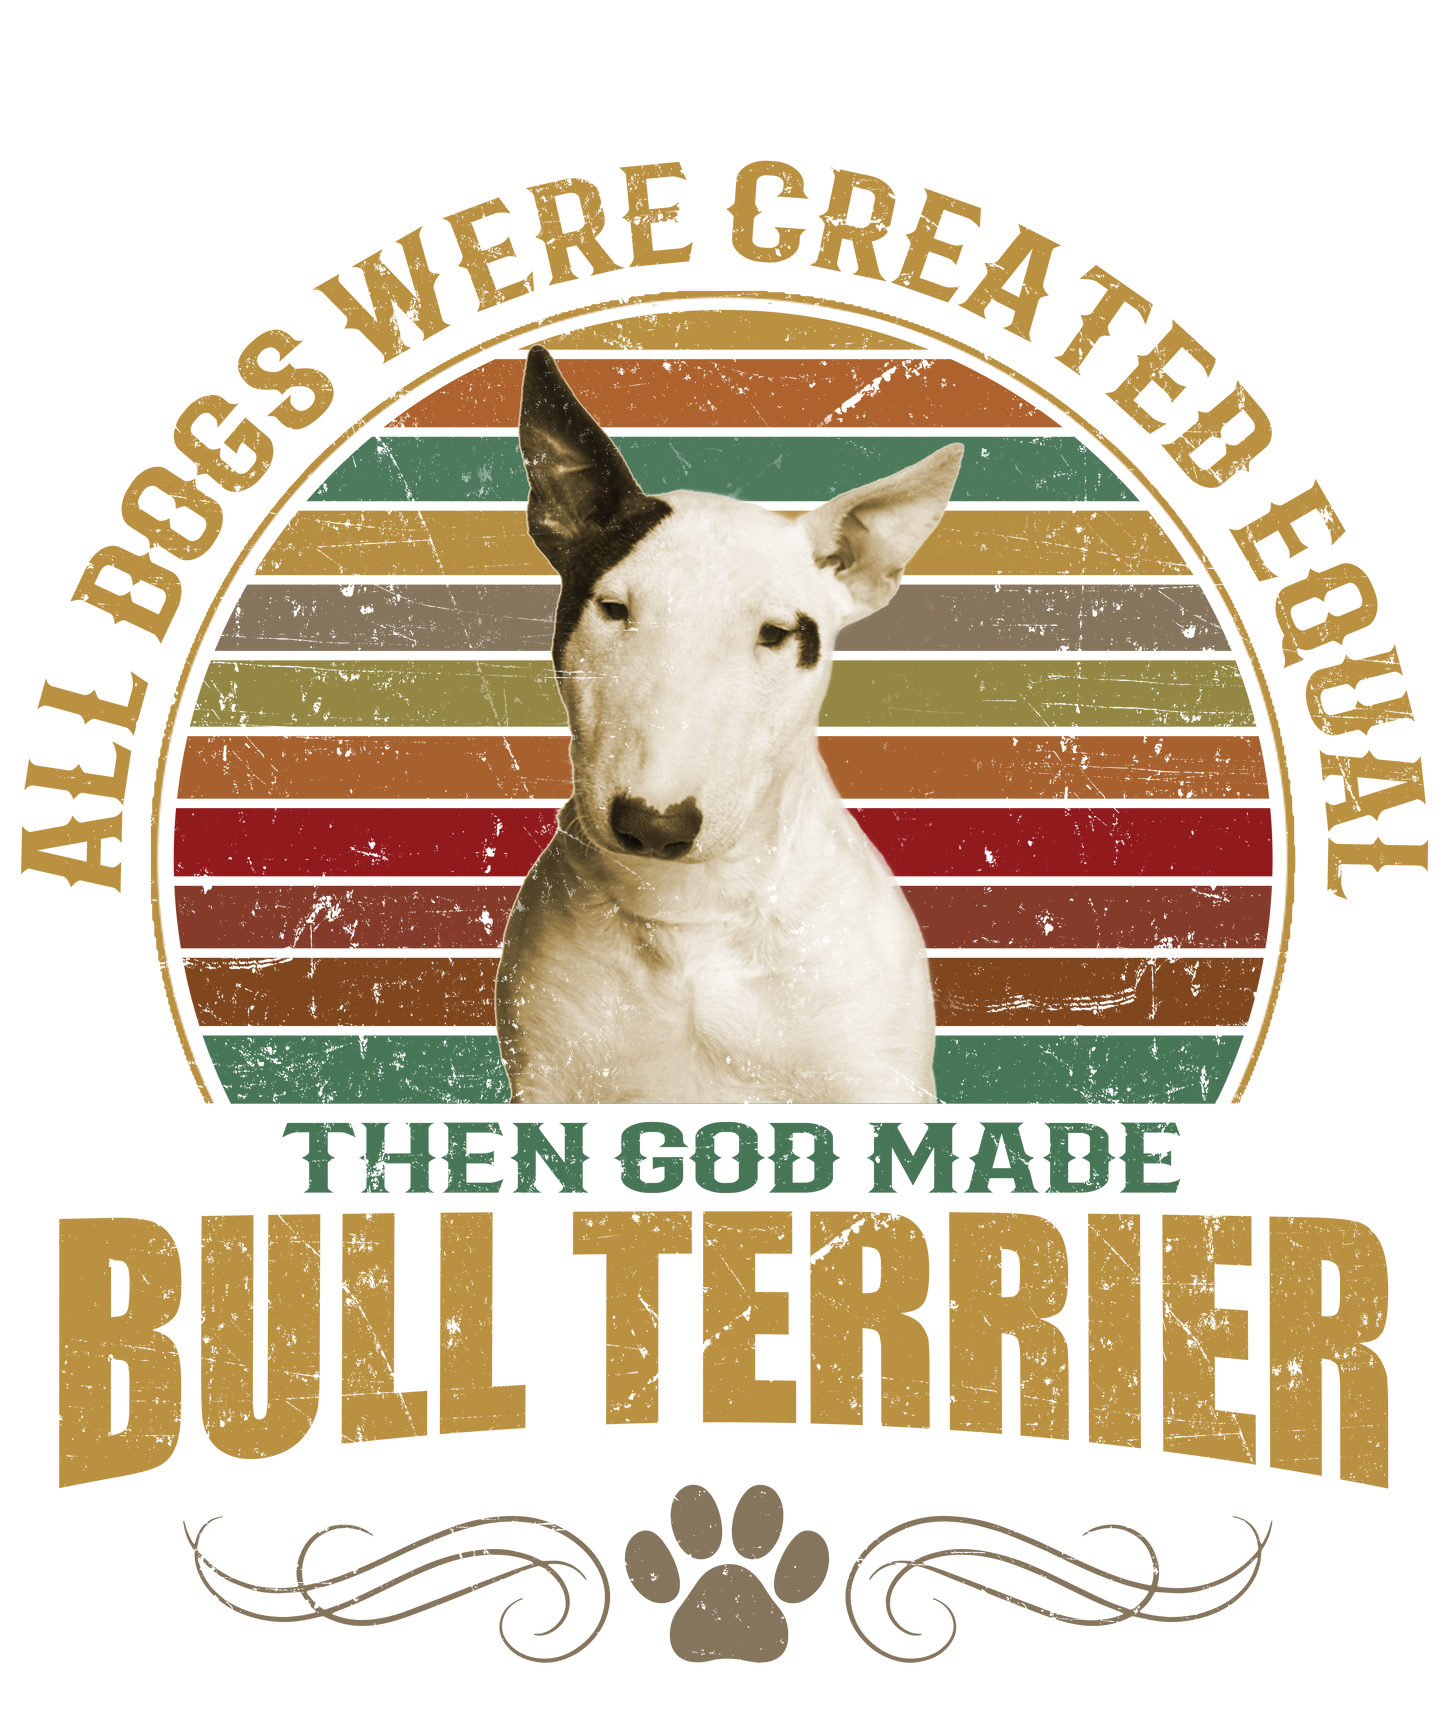 Bull Terrier Dog Lover Unisex Men’s T-Shirt Ready To Press DTF Transfer